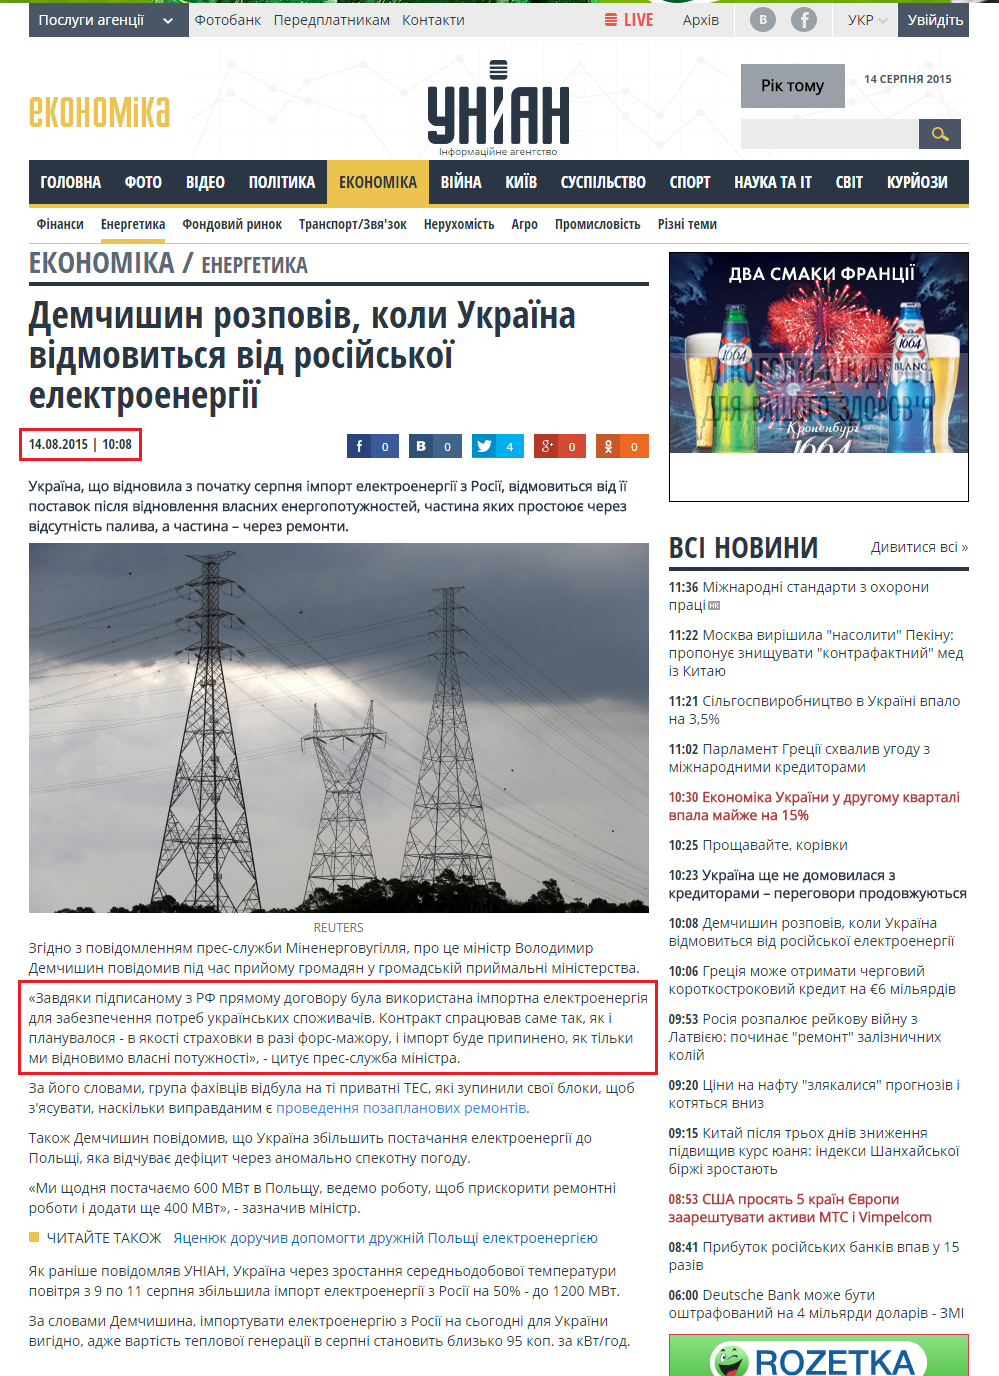 http://economics.unian.ua/energetics/1111508-demchishin-rozpoviv-koli-ukrajina-vidmovitsya-vid-rosiyskoji-elektroenergiji.html